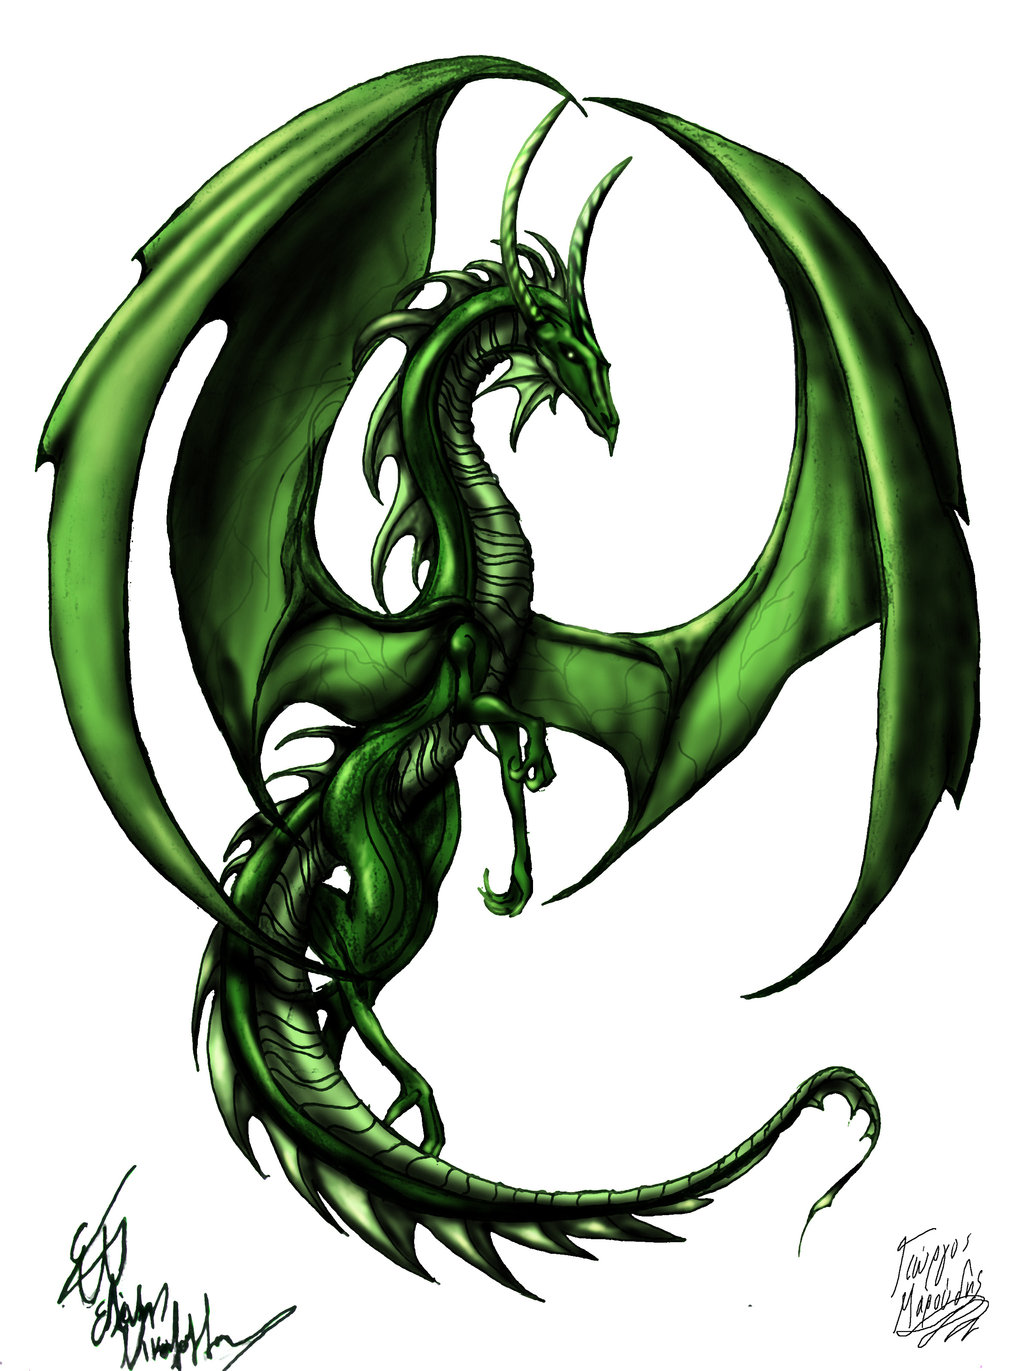 green earth dragon